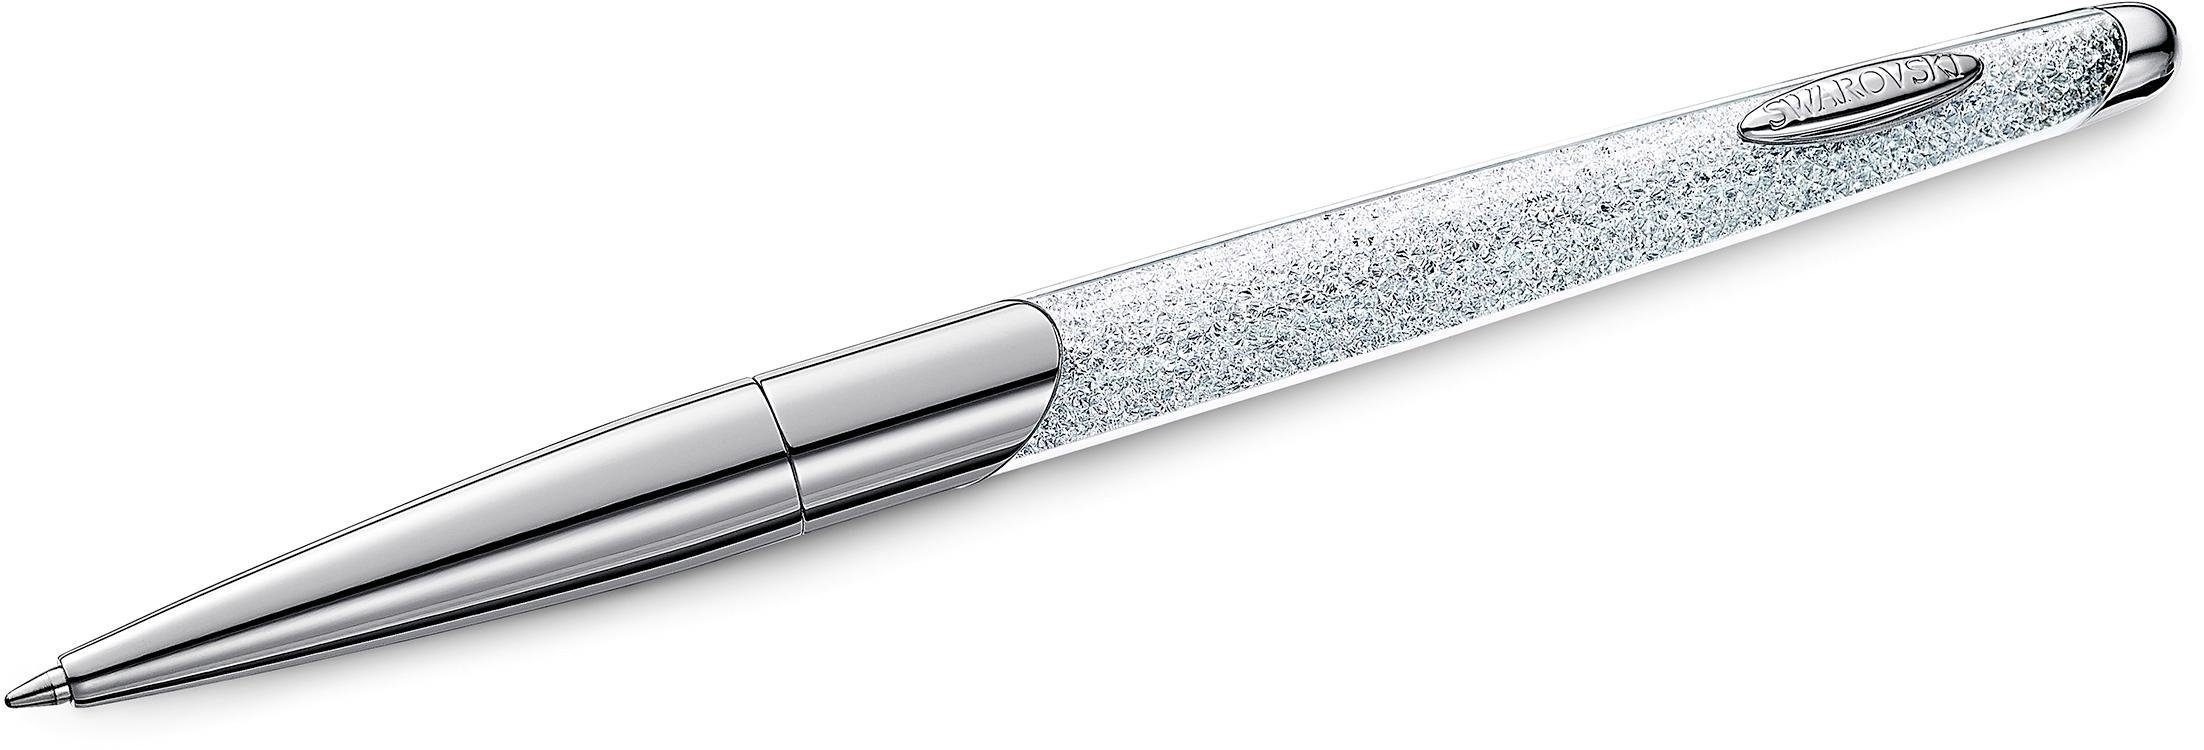 Swarovski Kugelschreiber Crystalline Nova, weiß, verchromt, 5534324, mit Swarovski® Kristallen